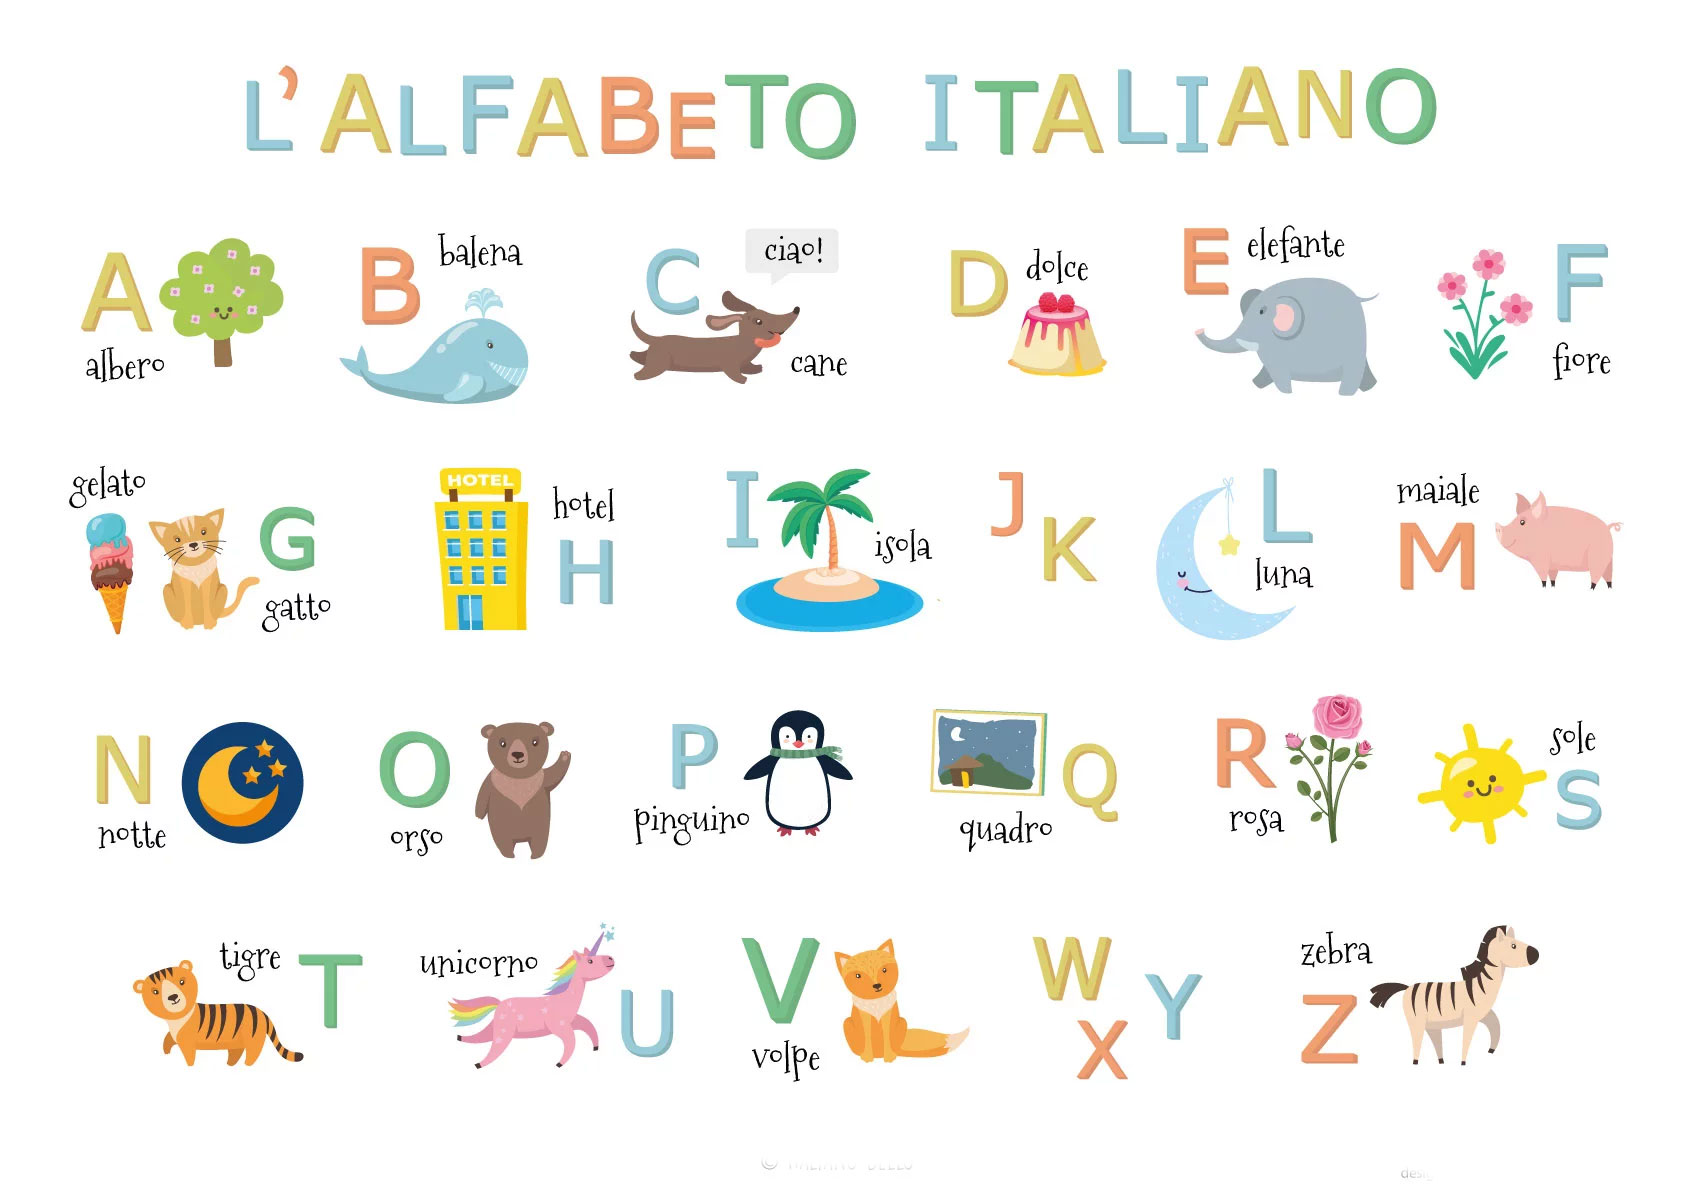 آموزش الفبای زبان ایتالیایی به زبان ساده با تلفظ